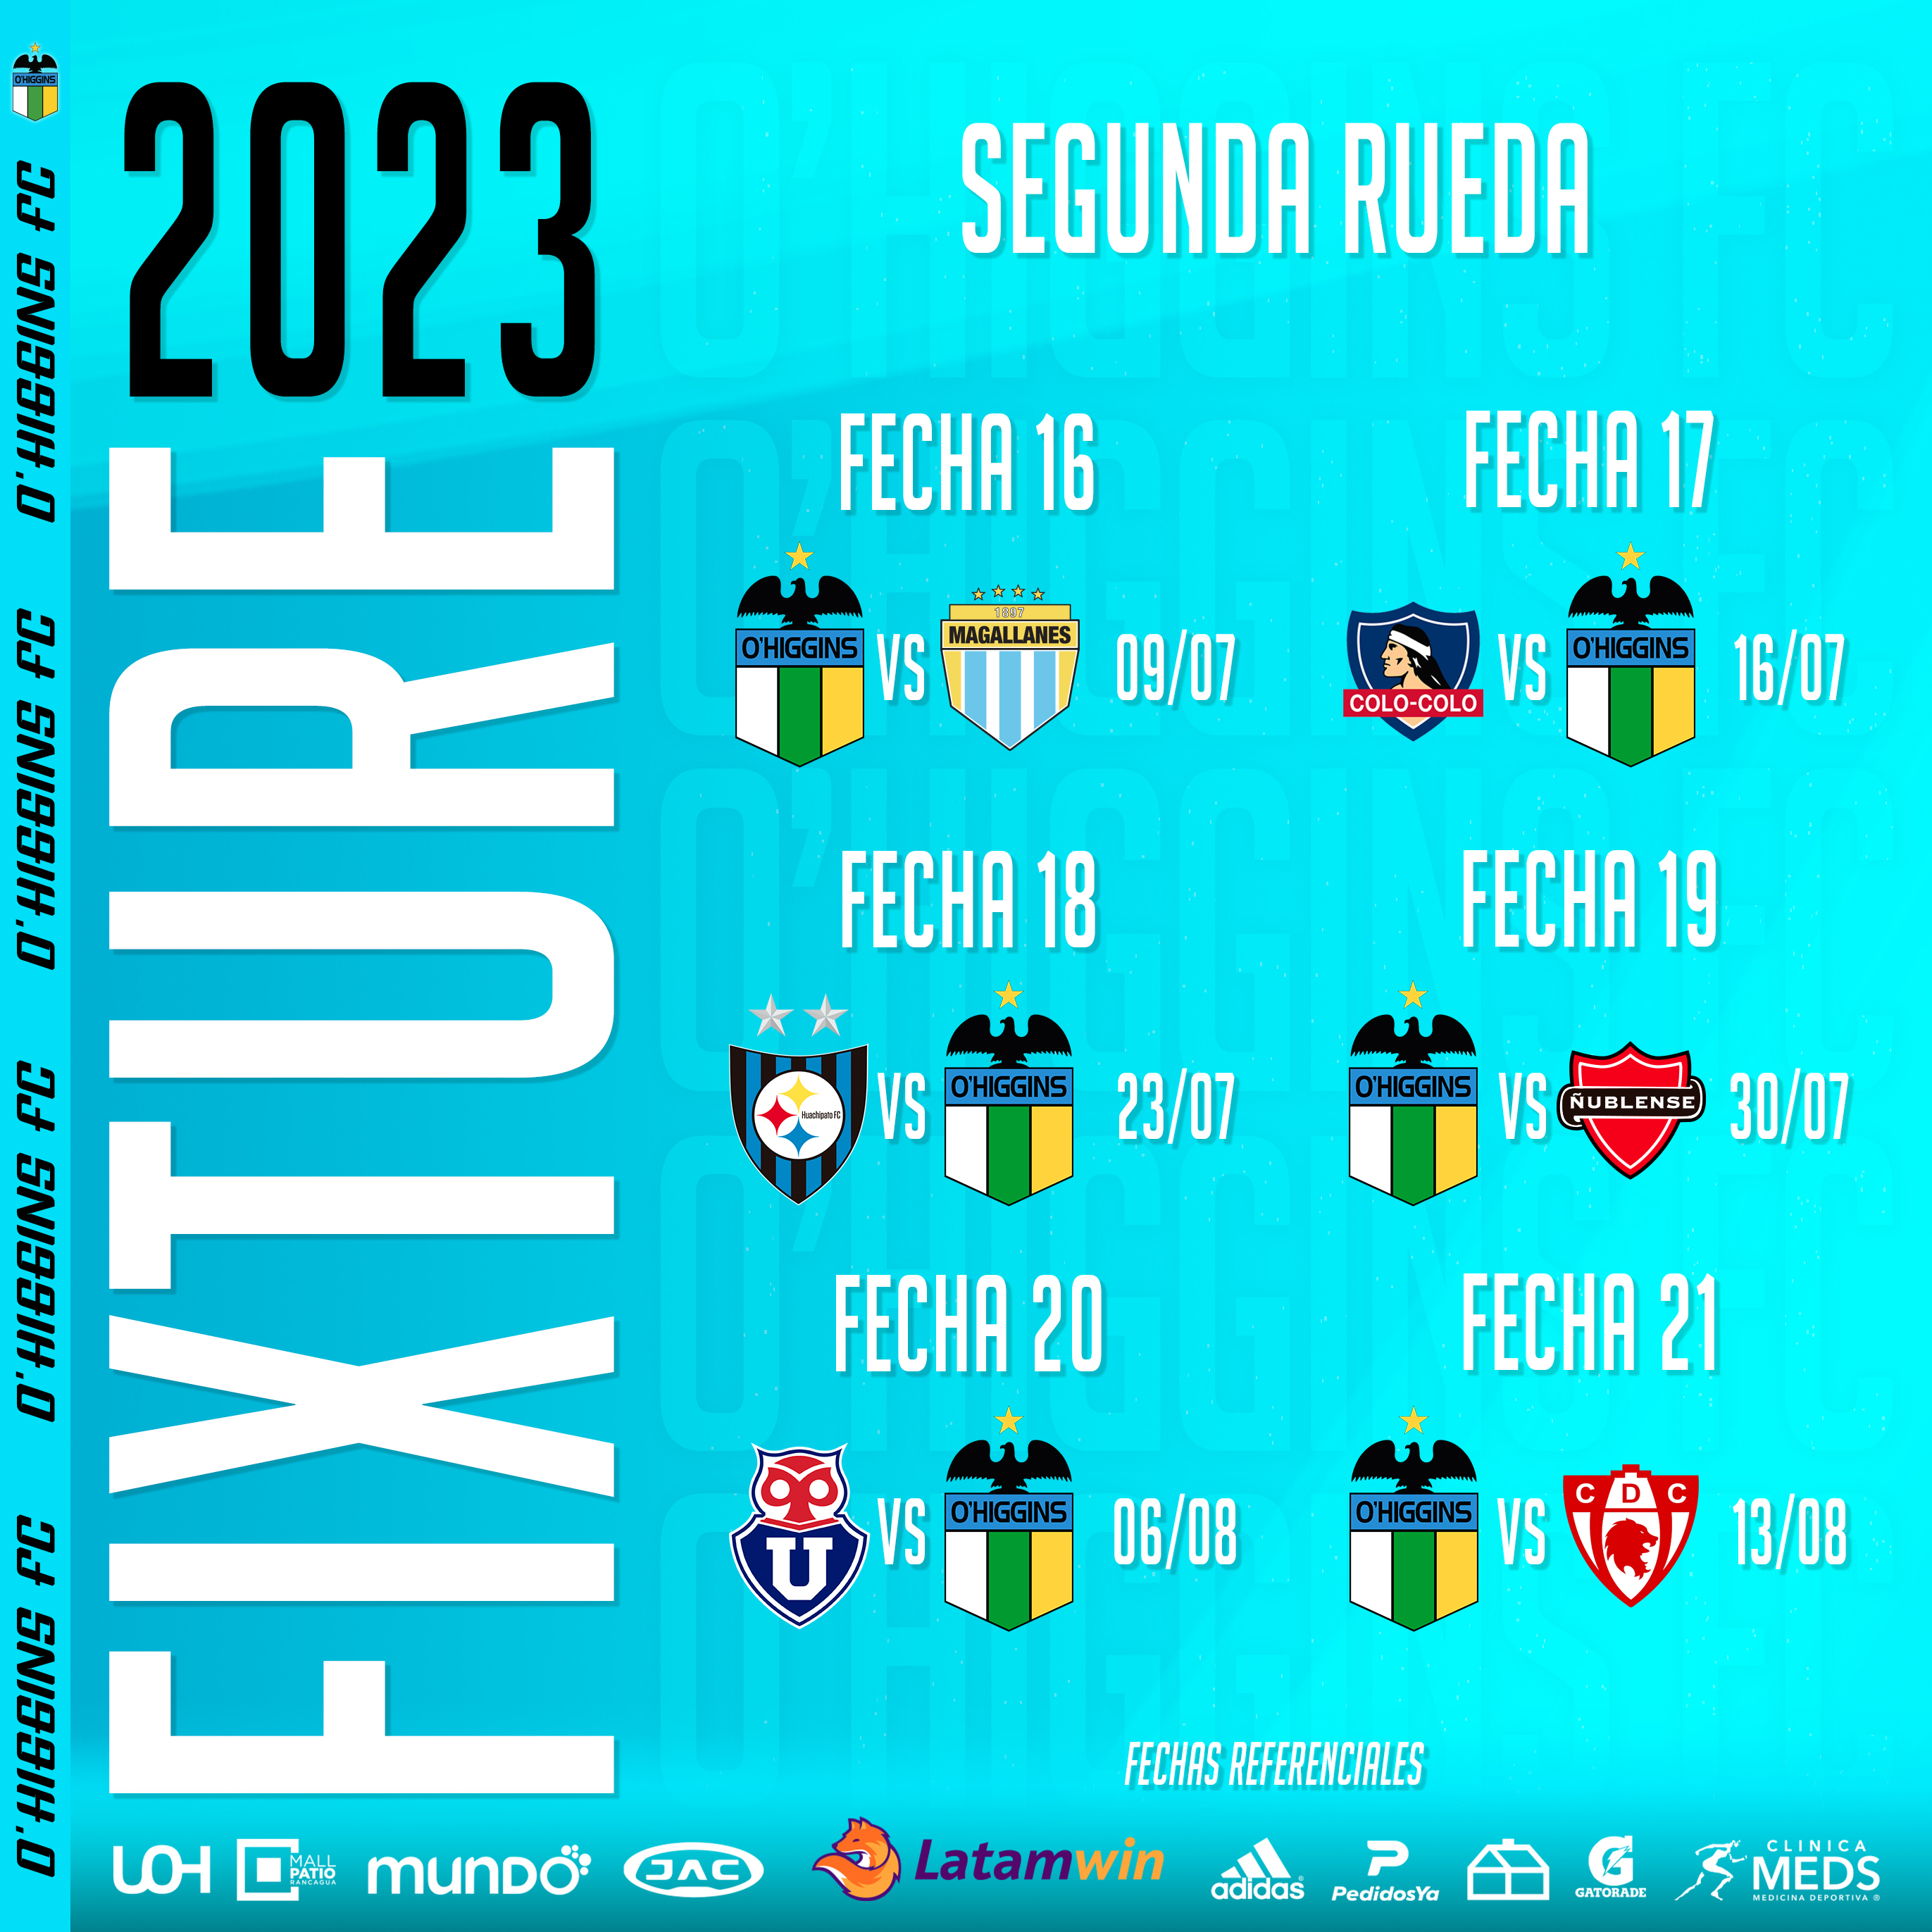 Primera División 2023 : Resultados Uruguay 